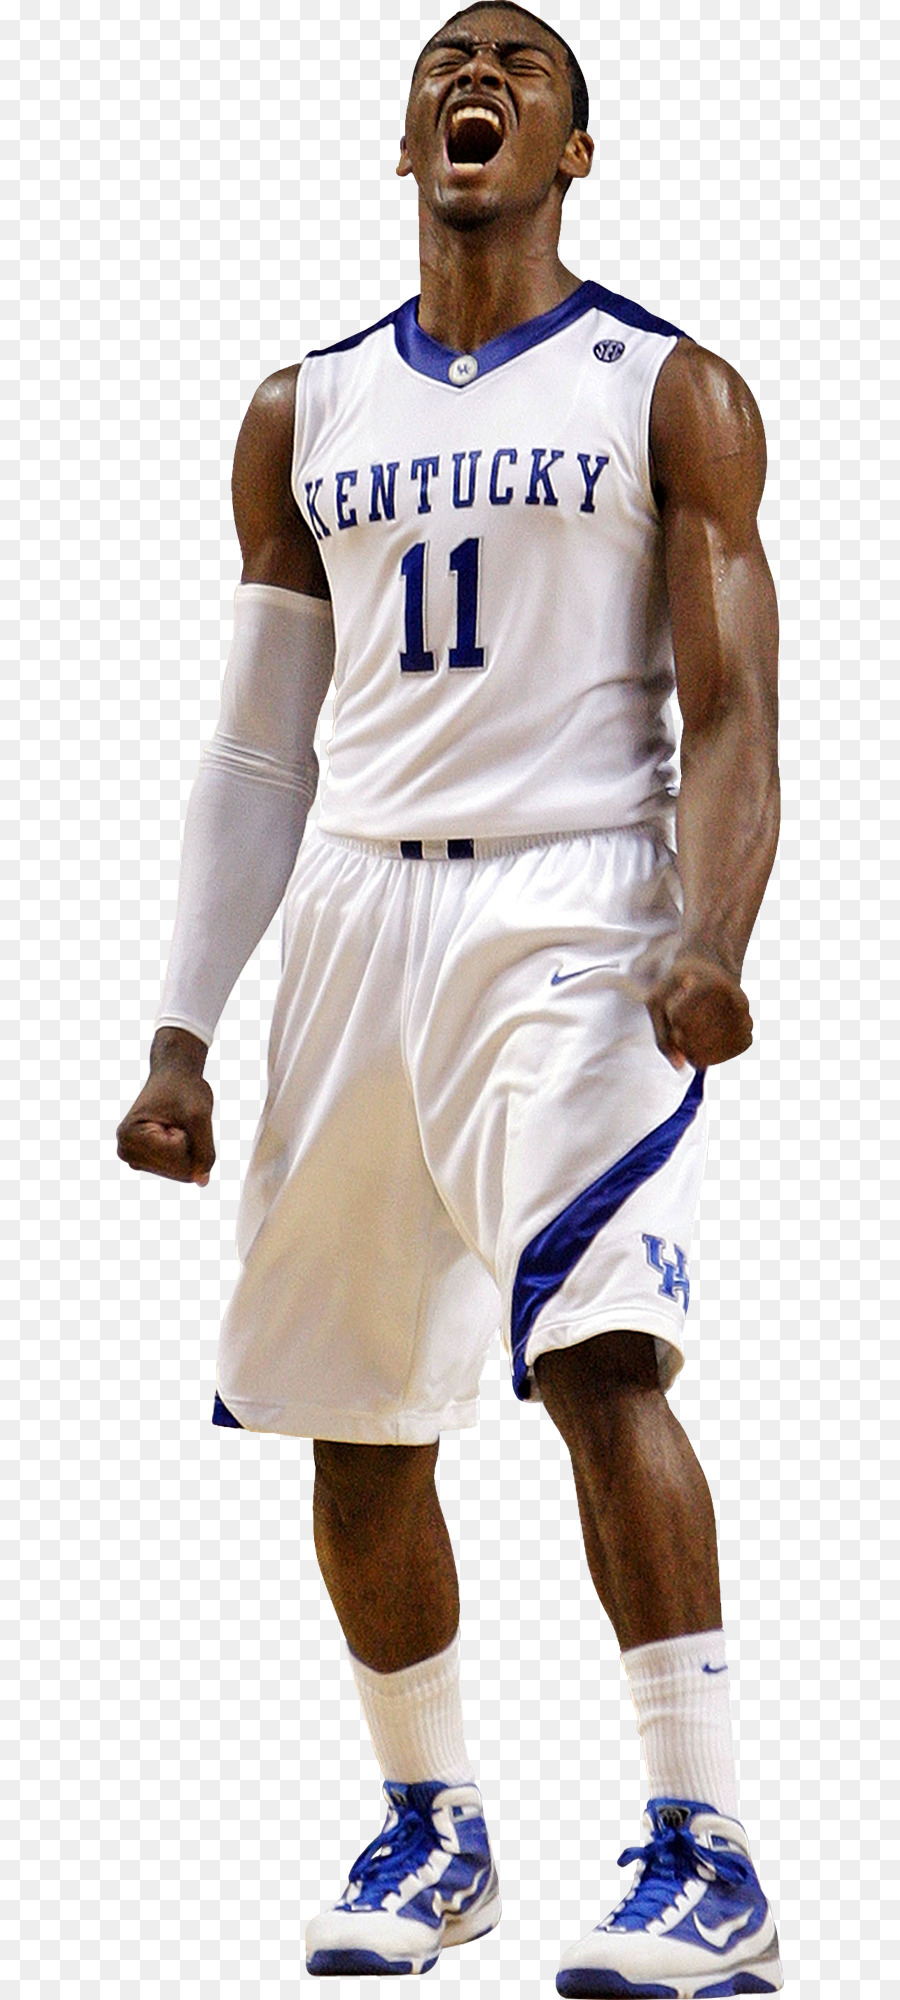 Kentucky Wildcats, gli uomini del basket giocatore di Basket è sport di Squadra - cugino